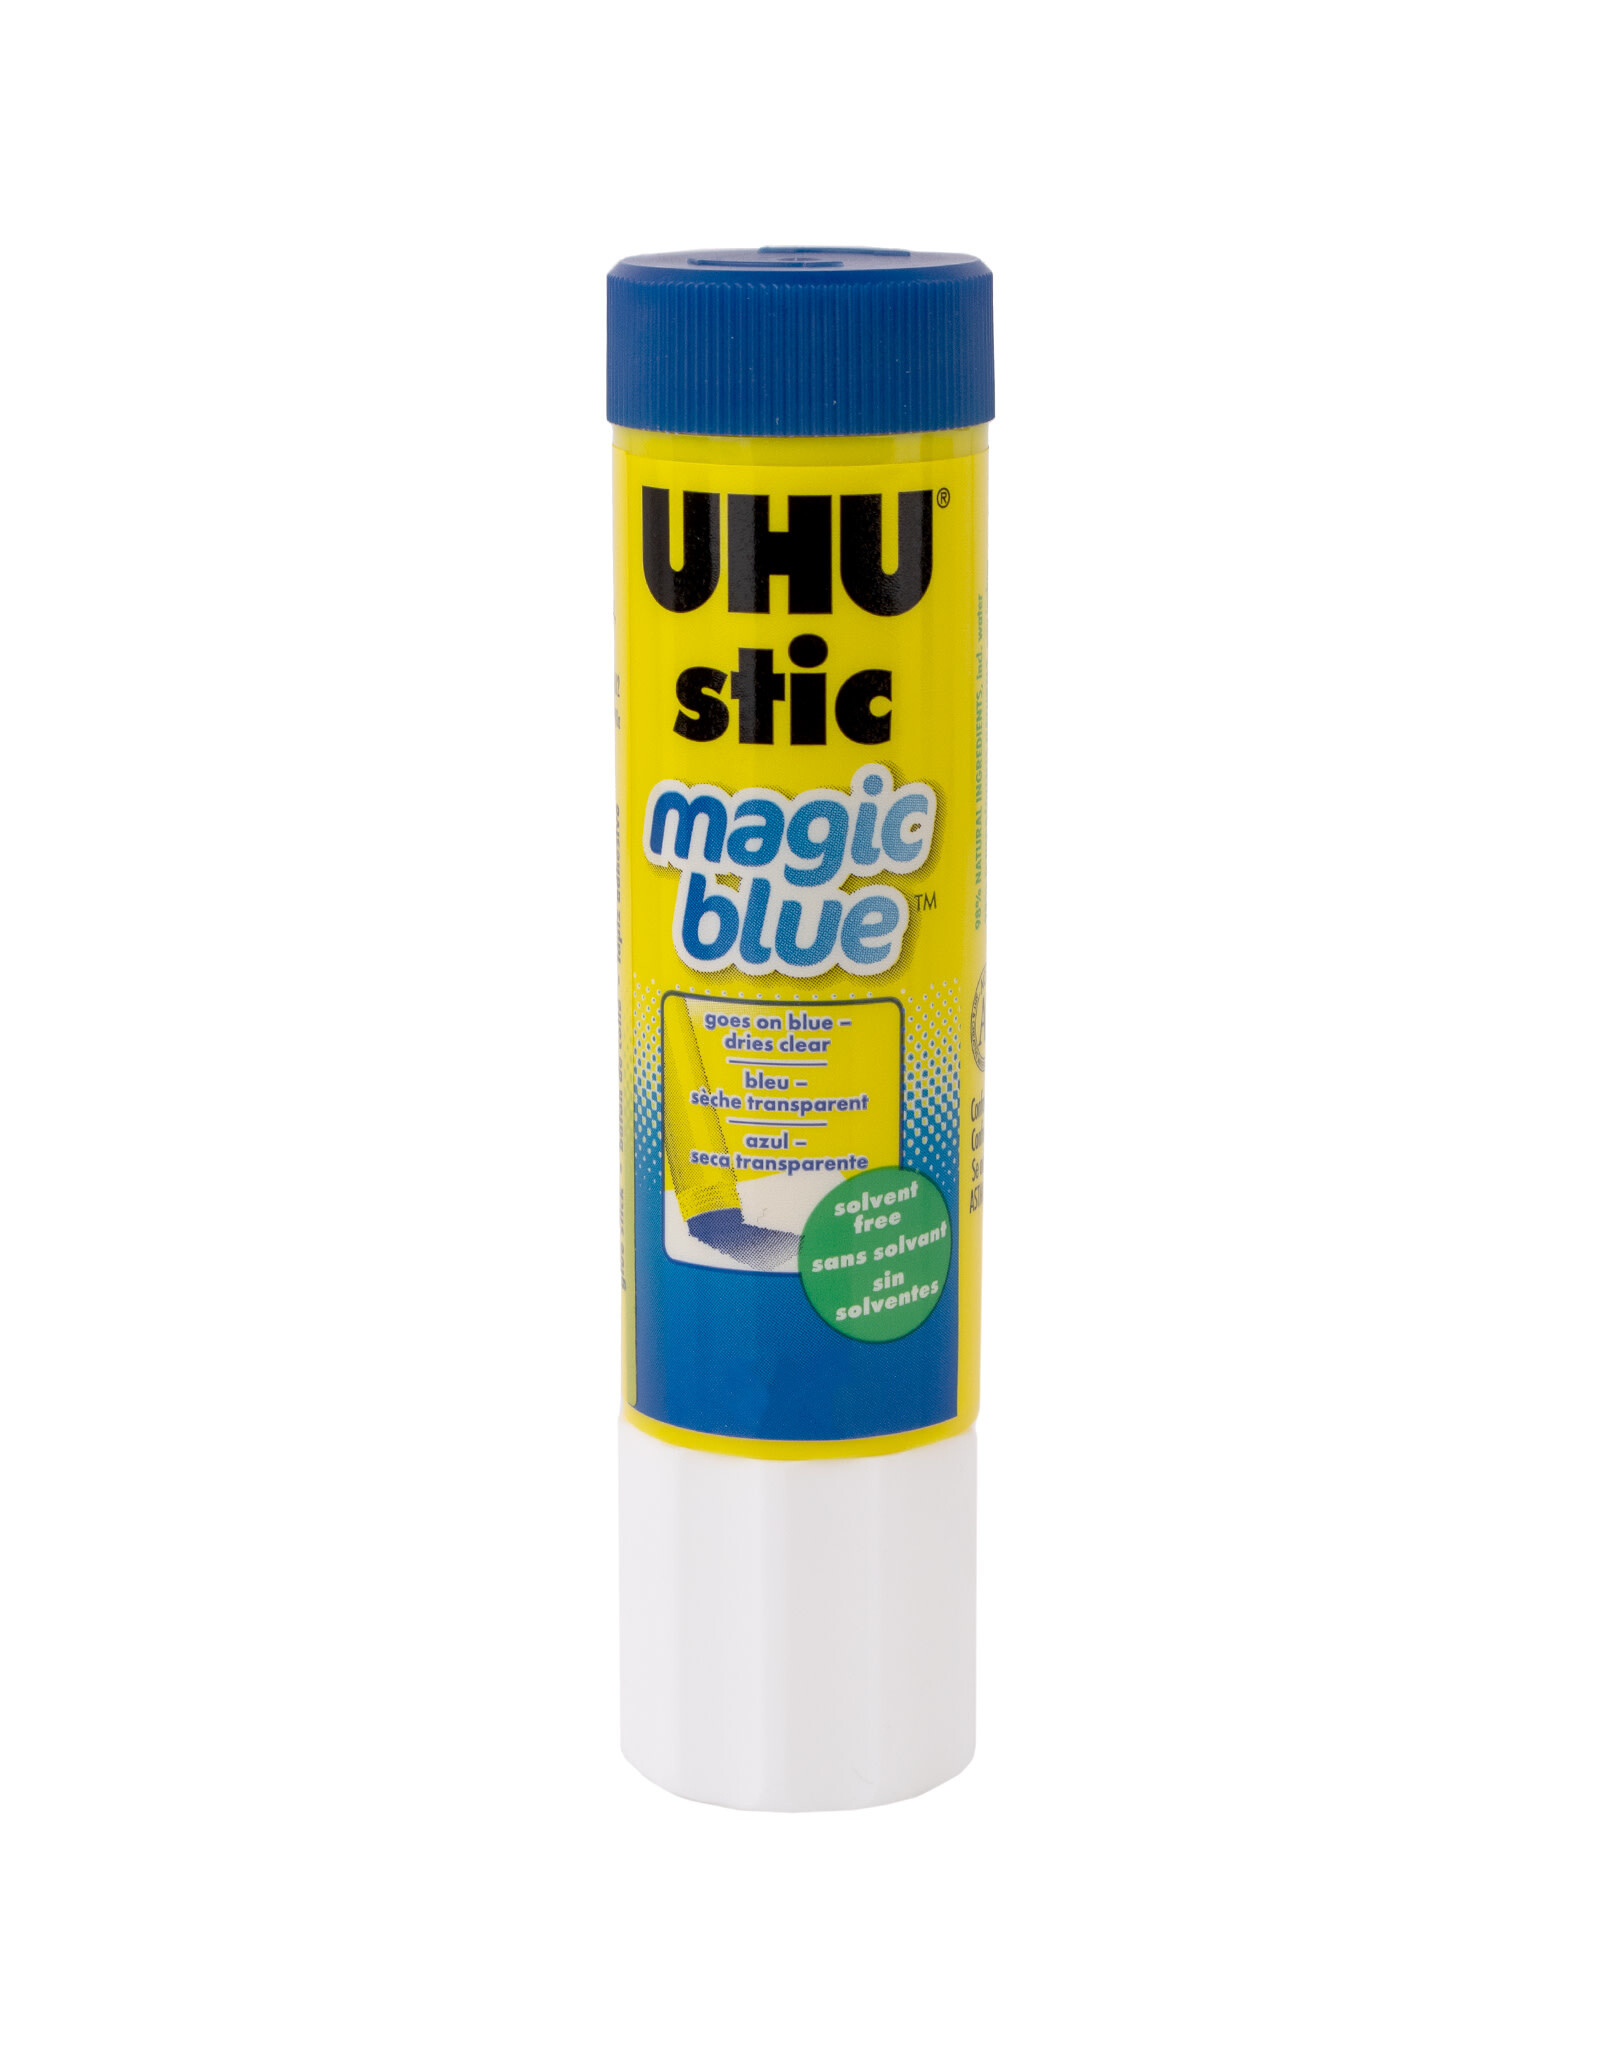 UHU Stic Magic Blue Glue Stick - 1.41 oz